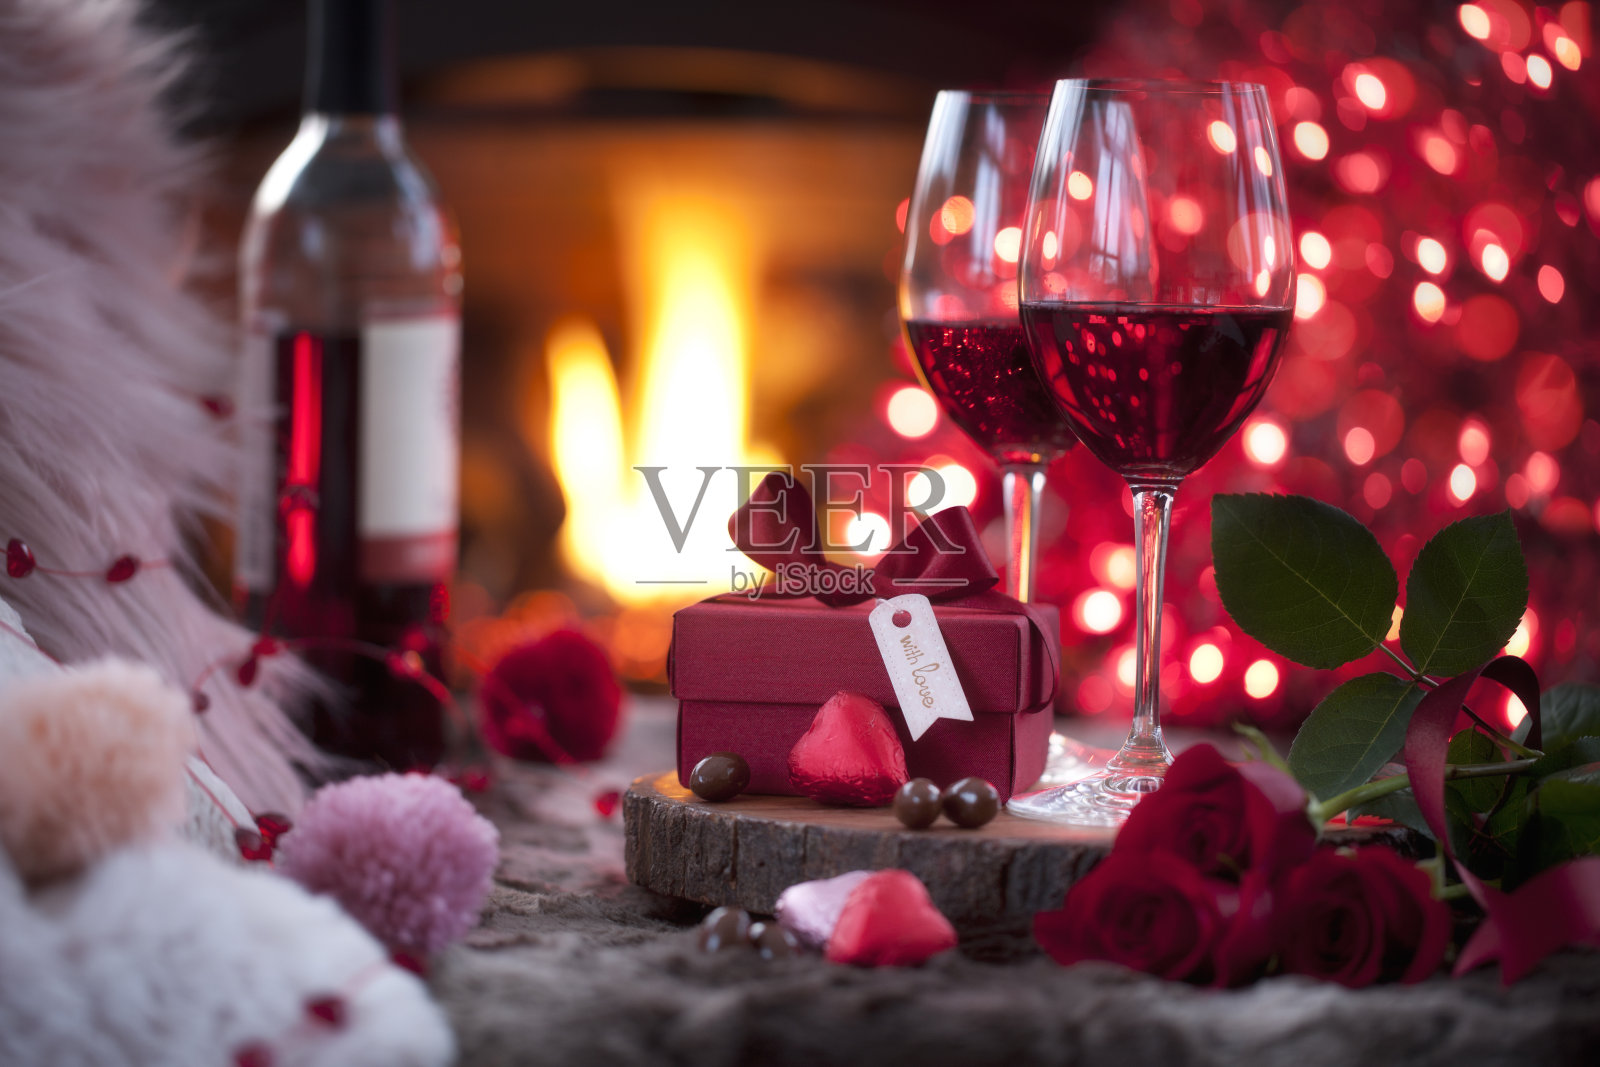 壁炉前放着红酒和巧克力作为情人节礼物照片摄影图片